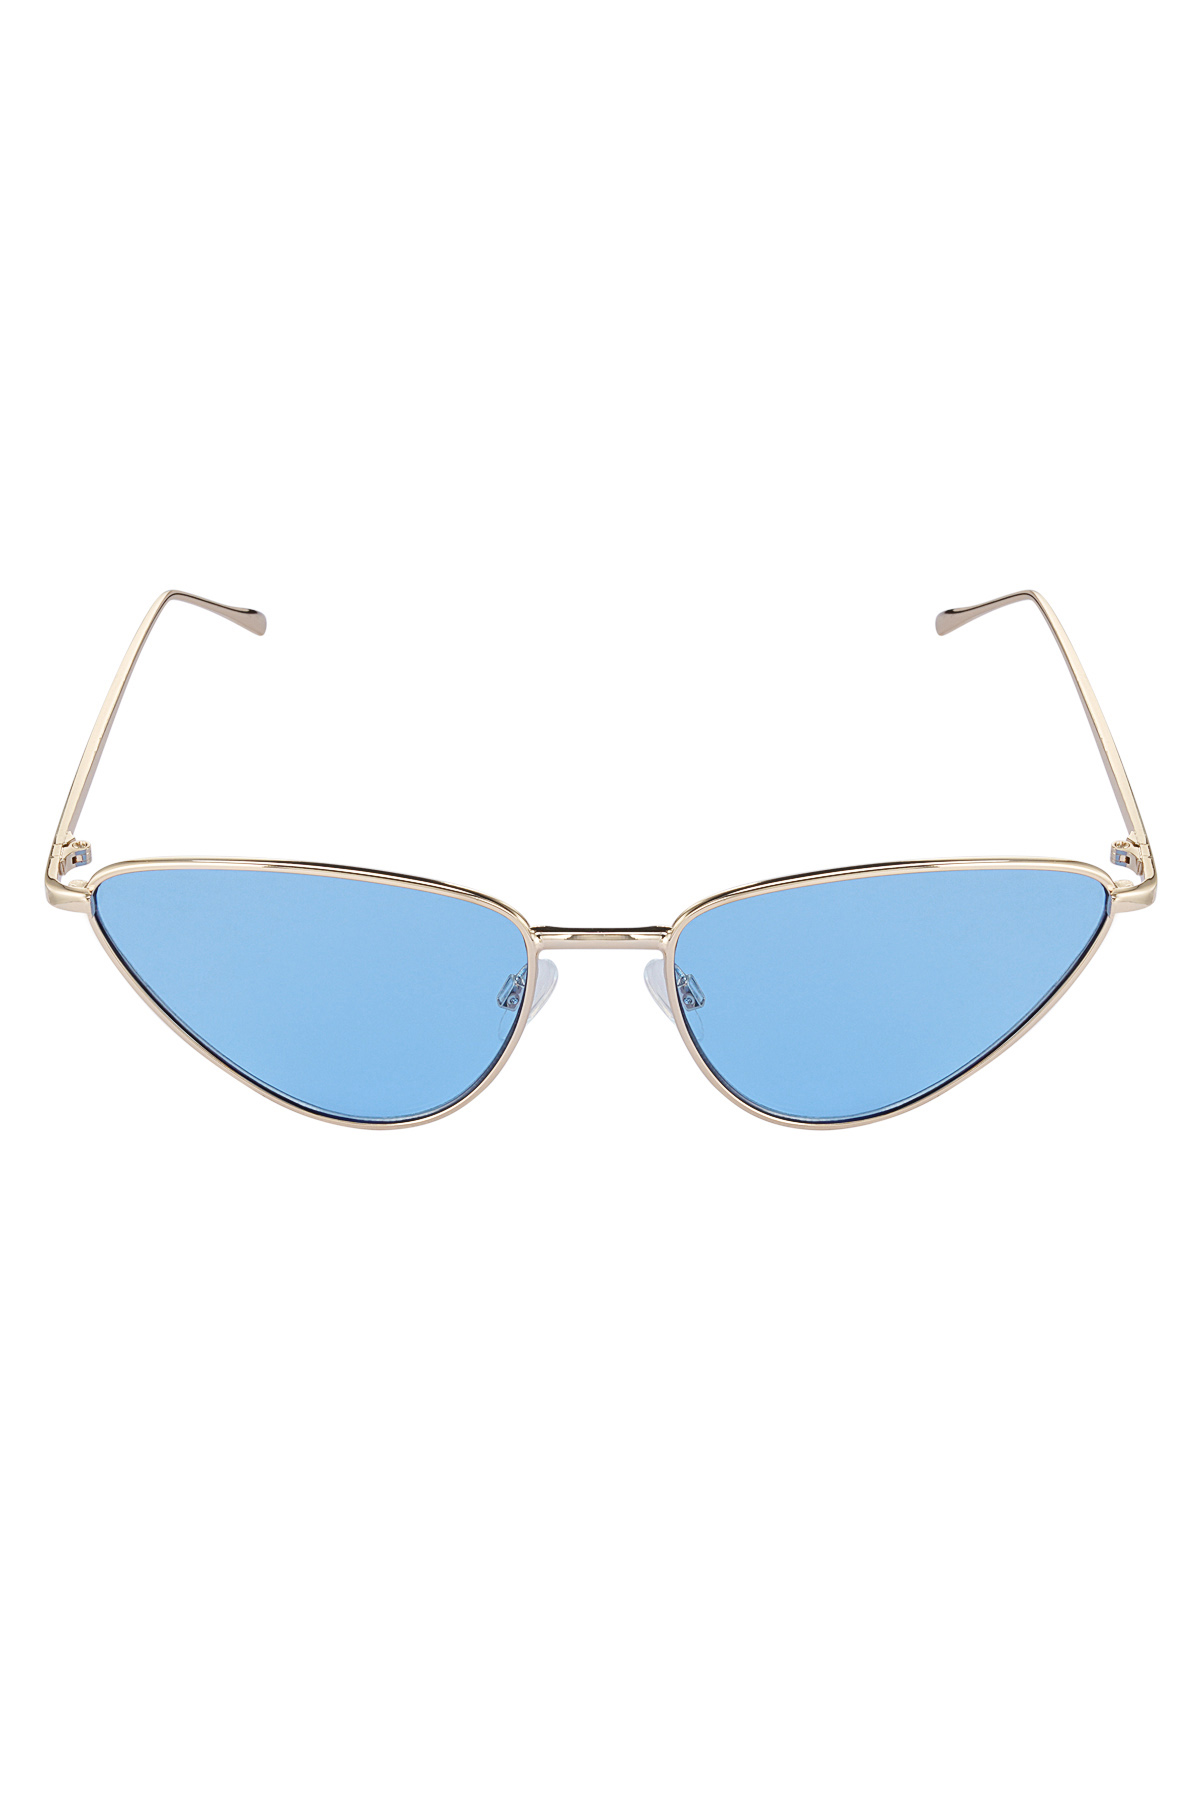 Parlamaya hazır güneş gözlüğü - mavi altın h5 Resim4